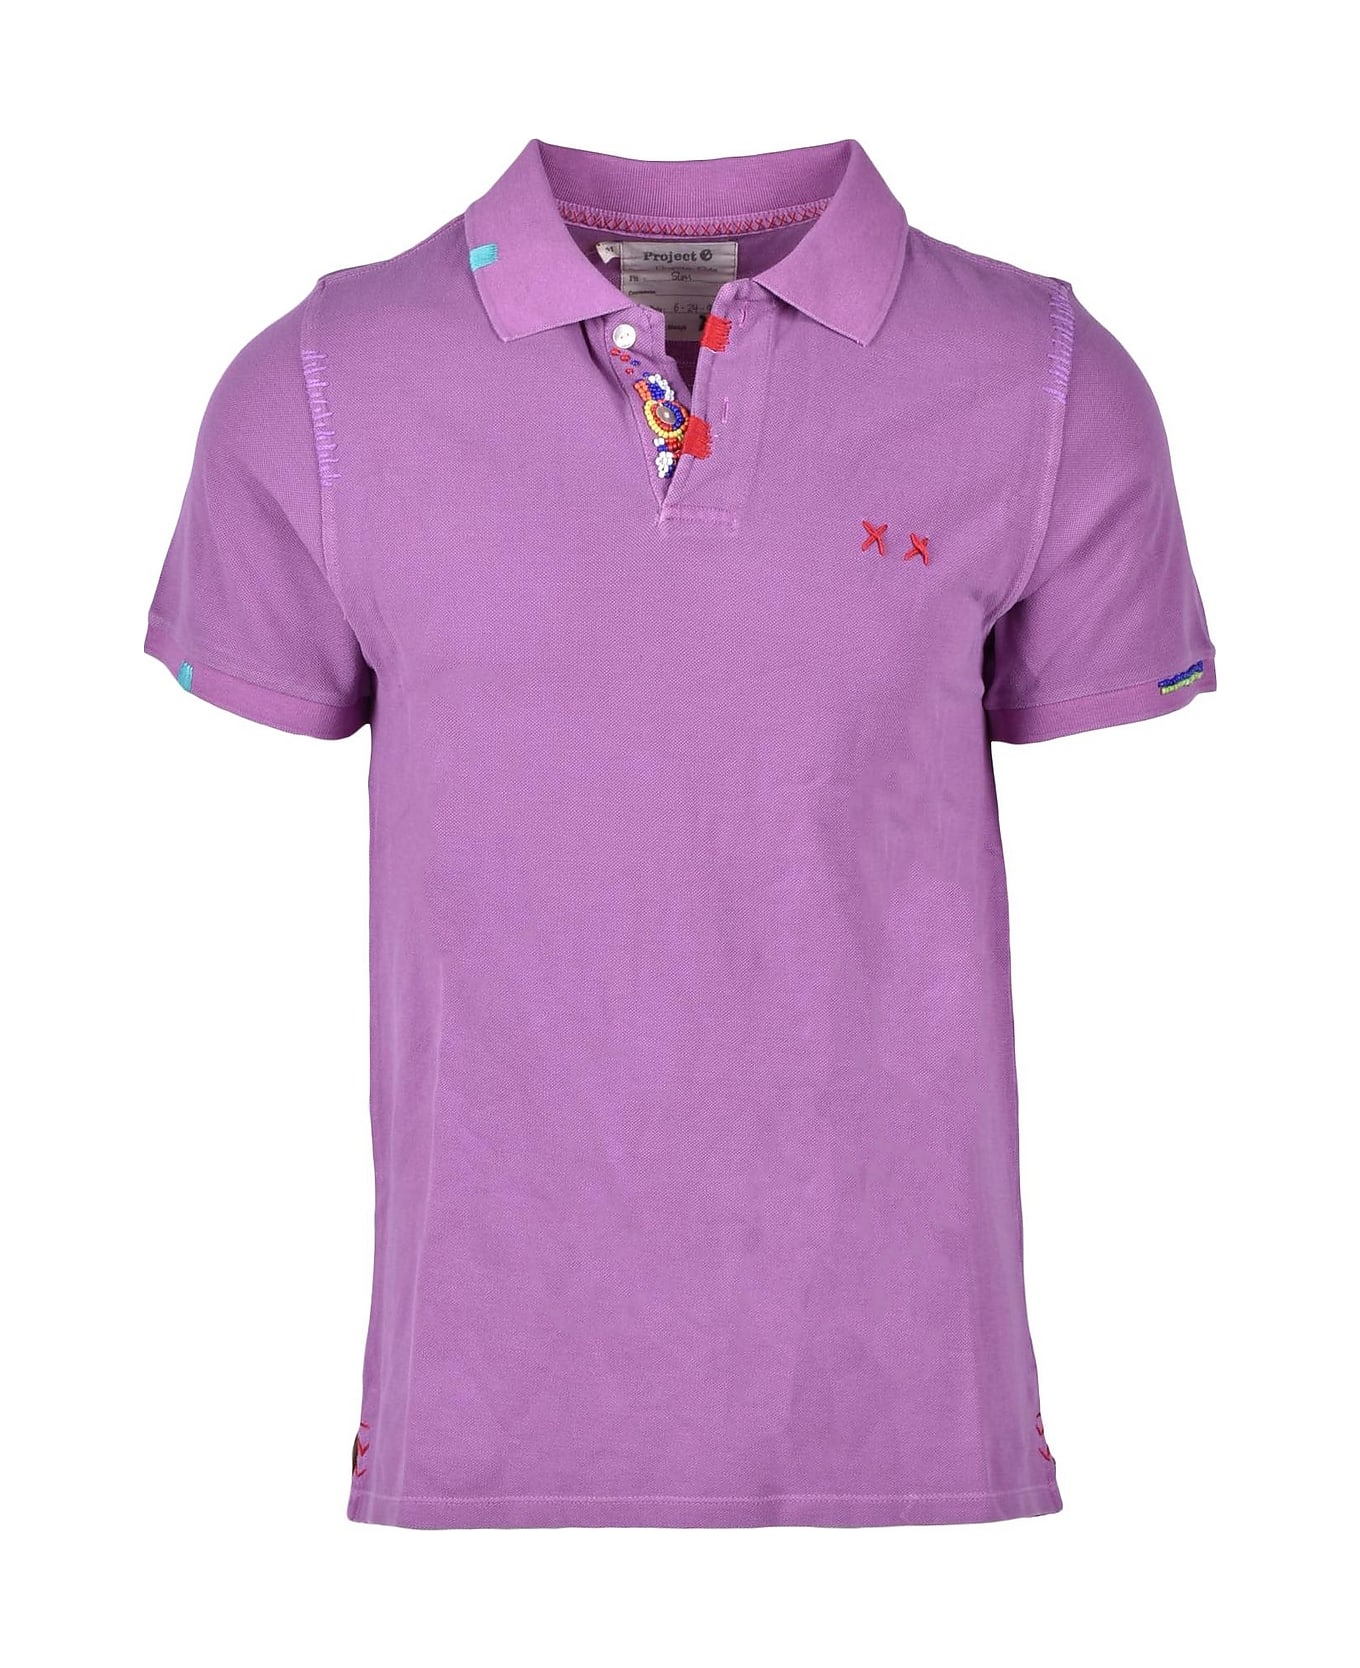 Project e Men's Violet Shirt - Purple